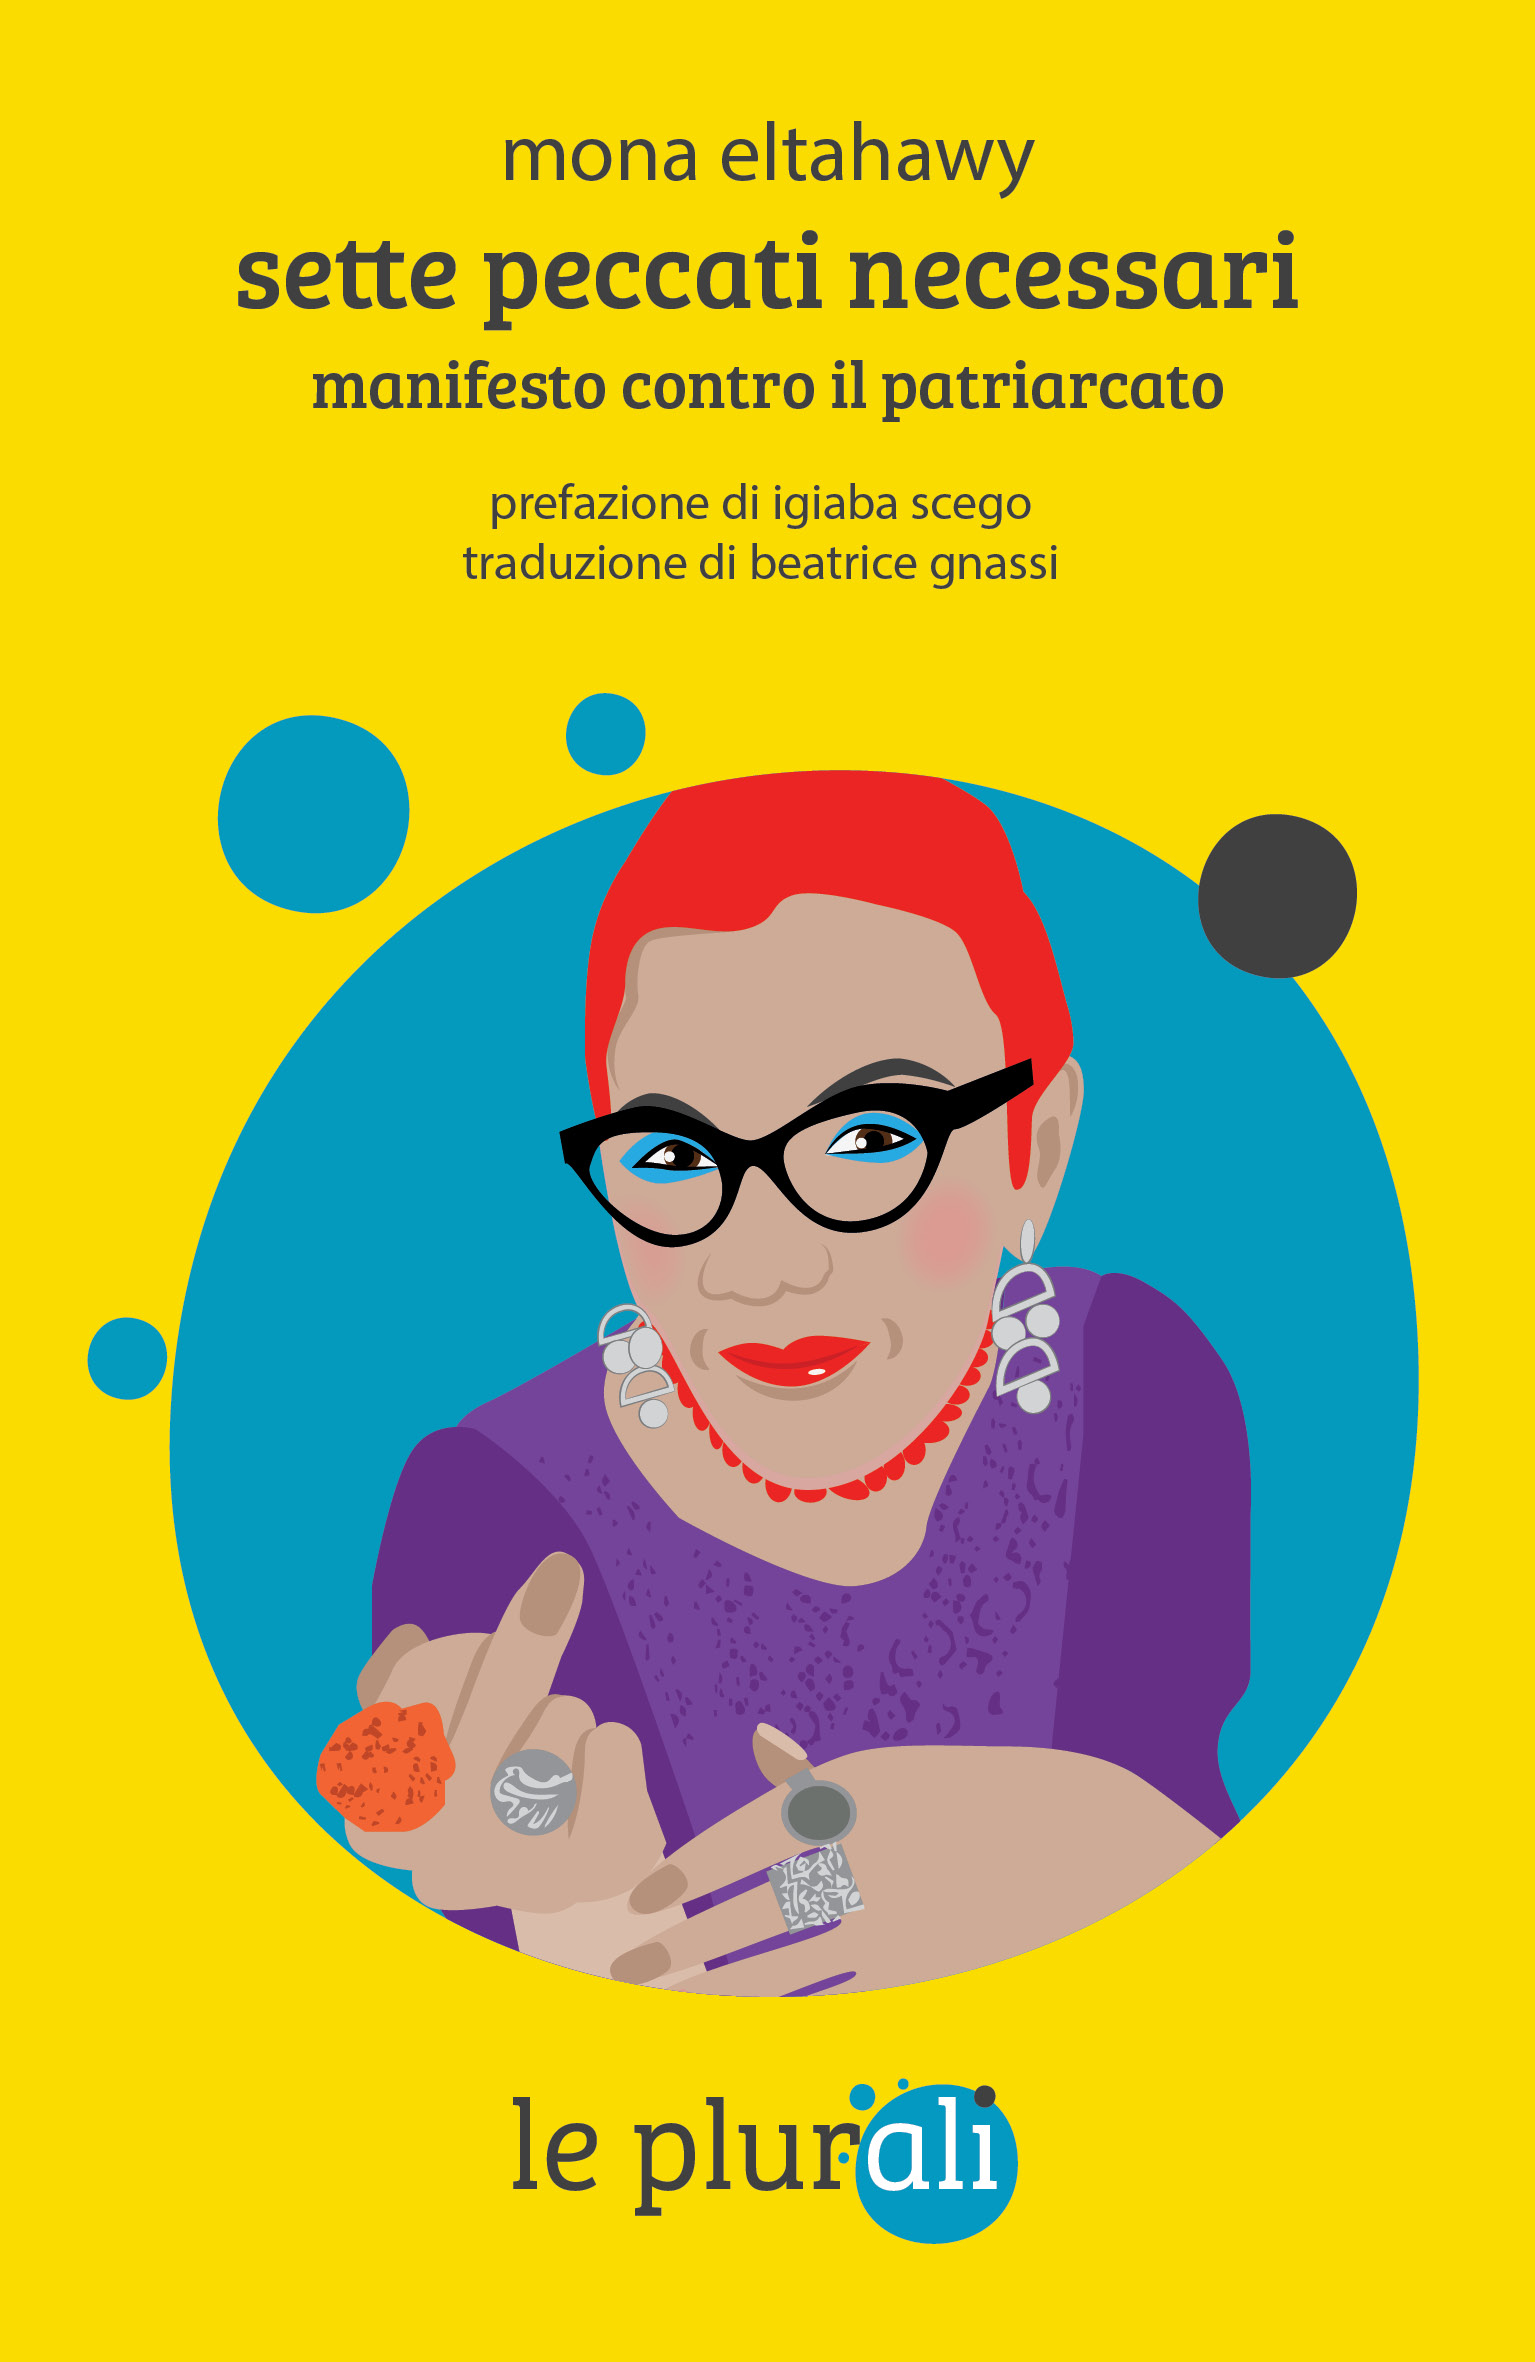 <strong>mer 24 mag Pisa, Firenze: Mona Eltahawy la celebre scrittrice e attivista in Italia per presentare “Sette peccati necessari”</strong>